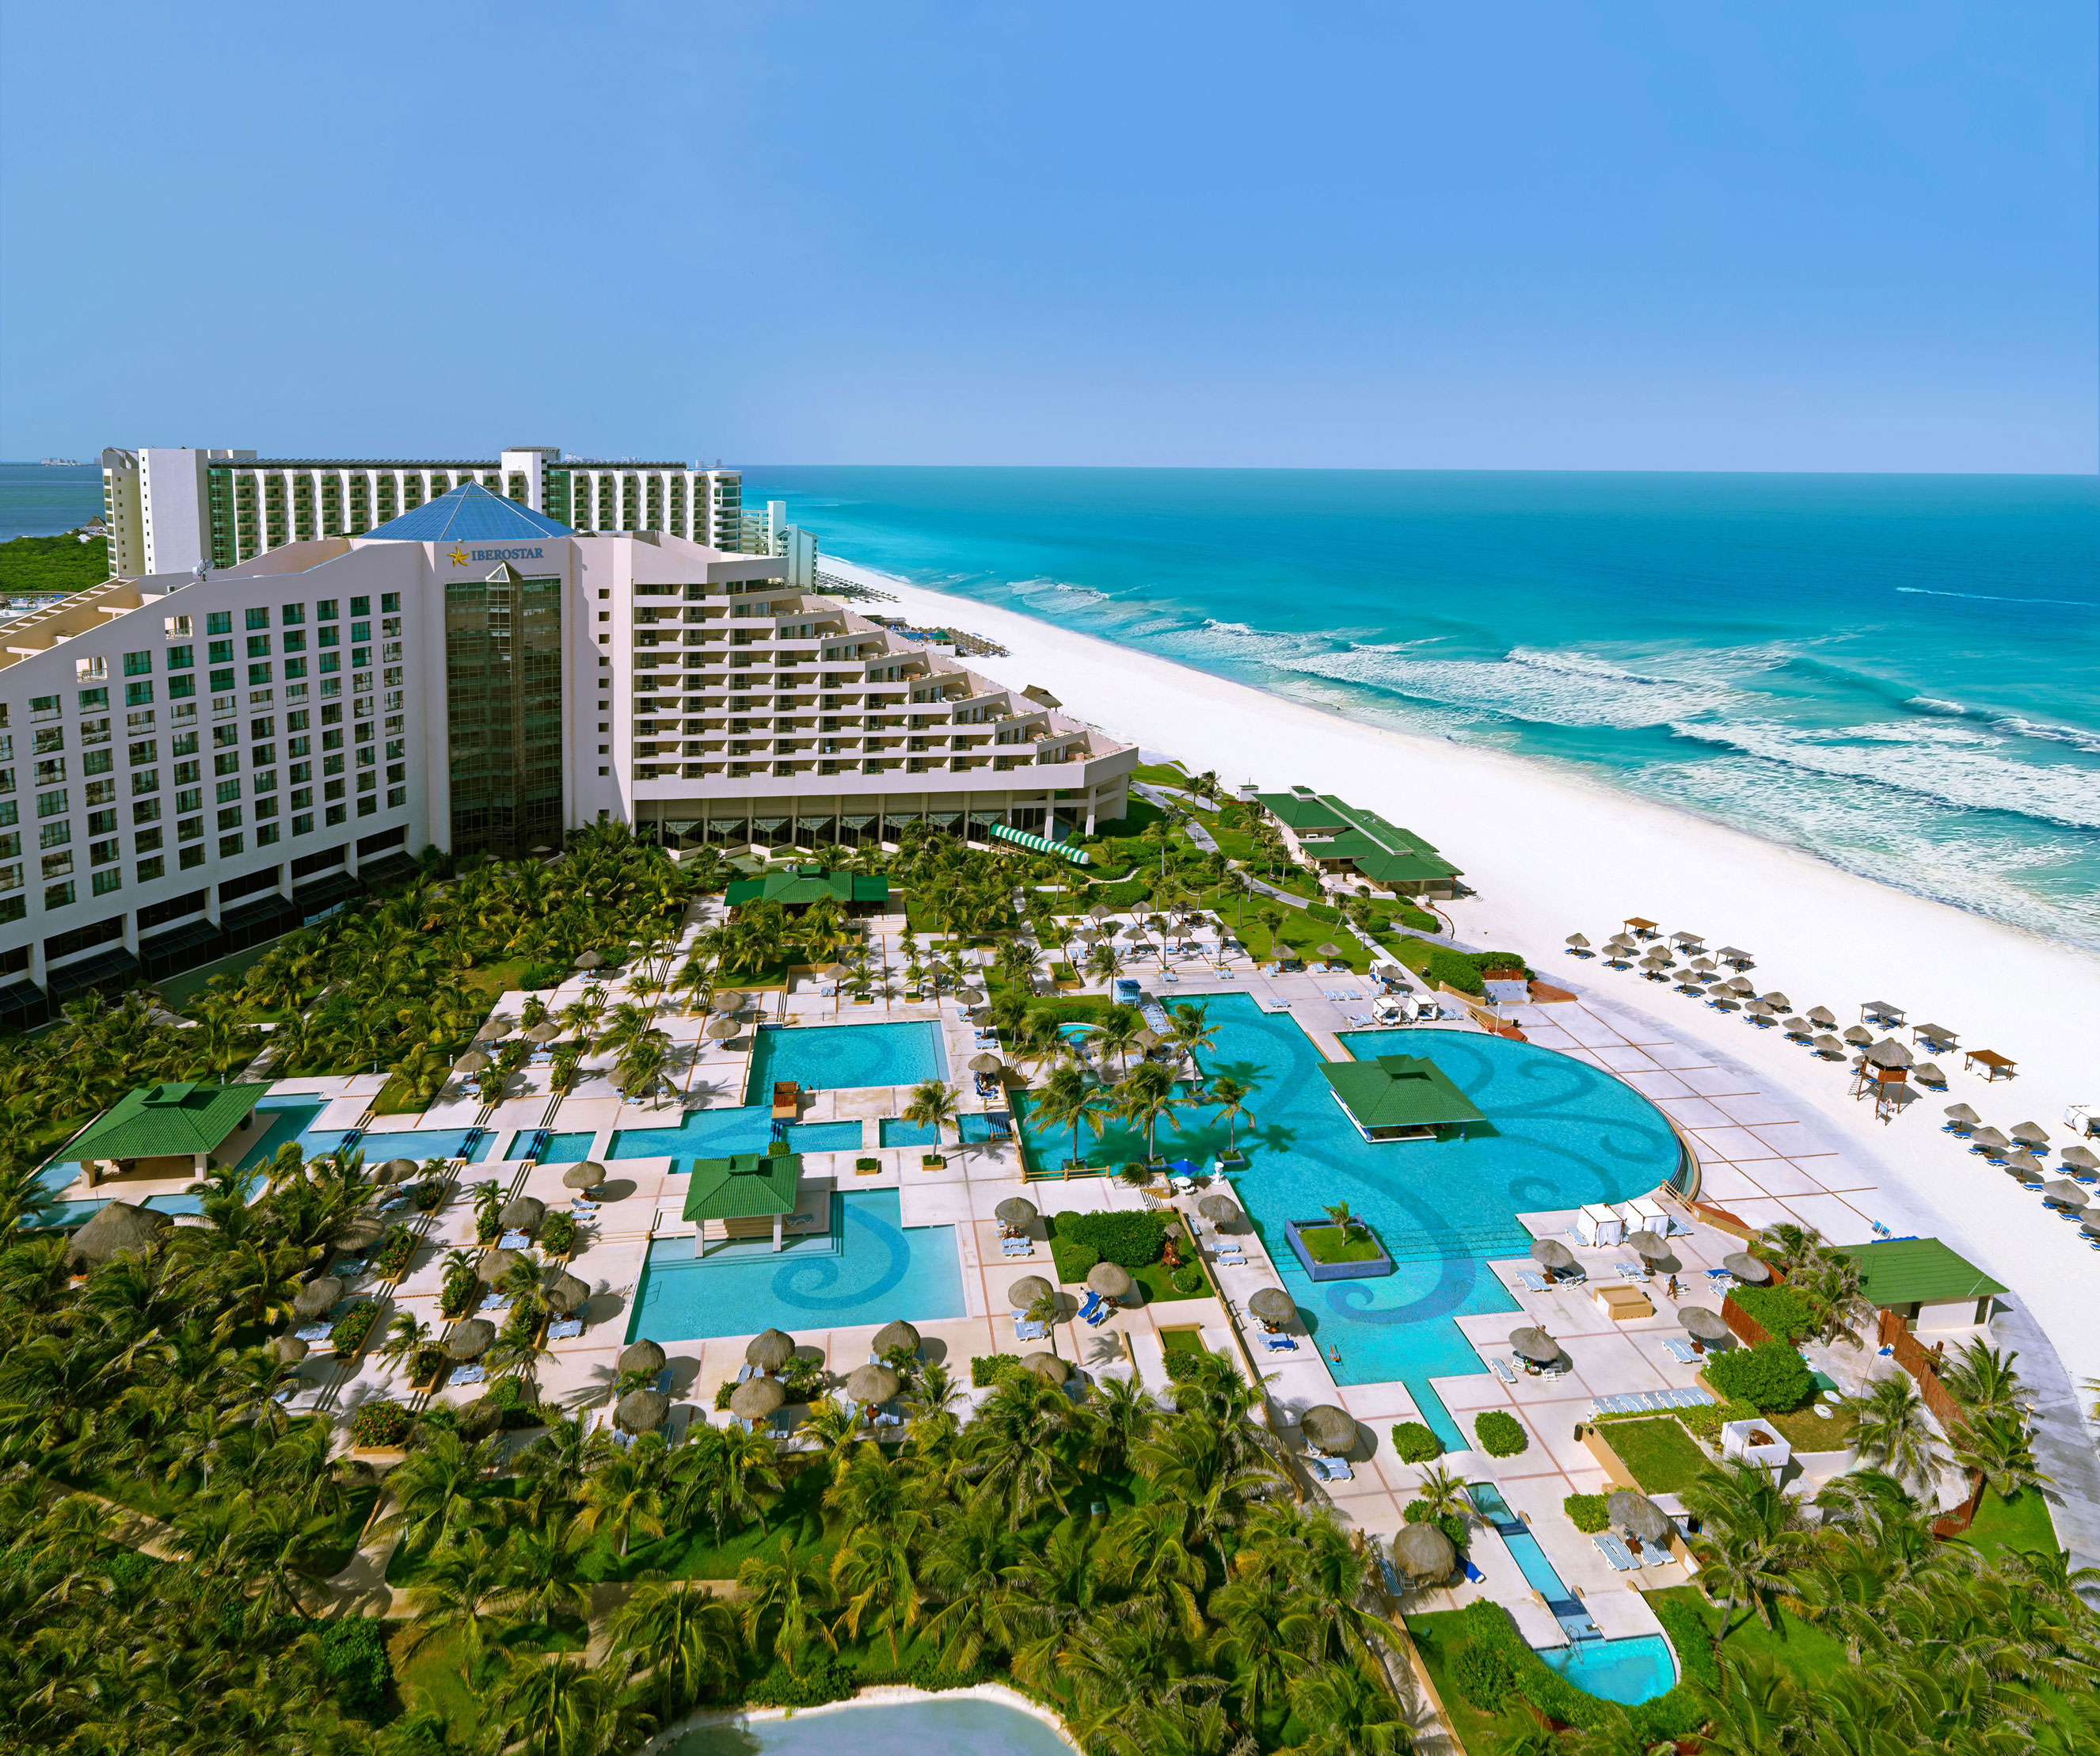 Iberostar Cancun – Cancun – Iberostar Cancun Hotel Specials